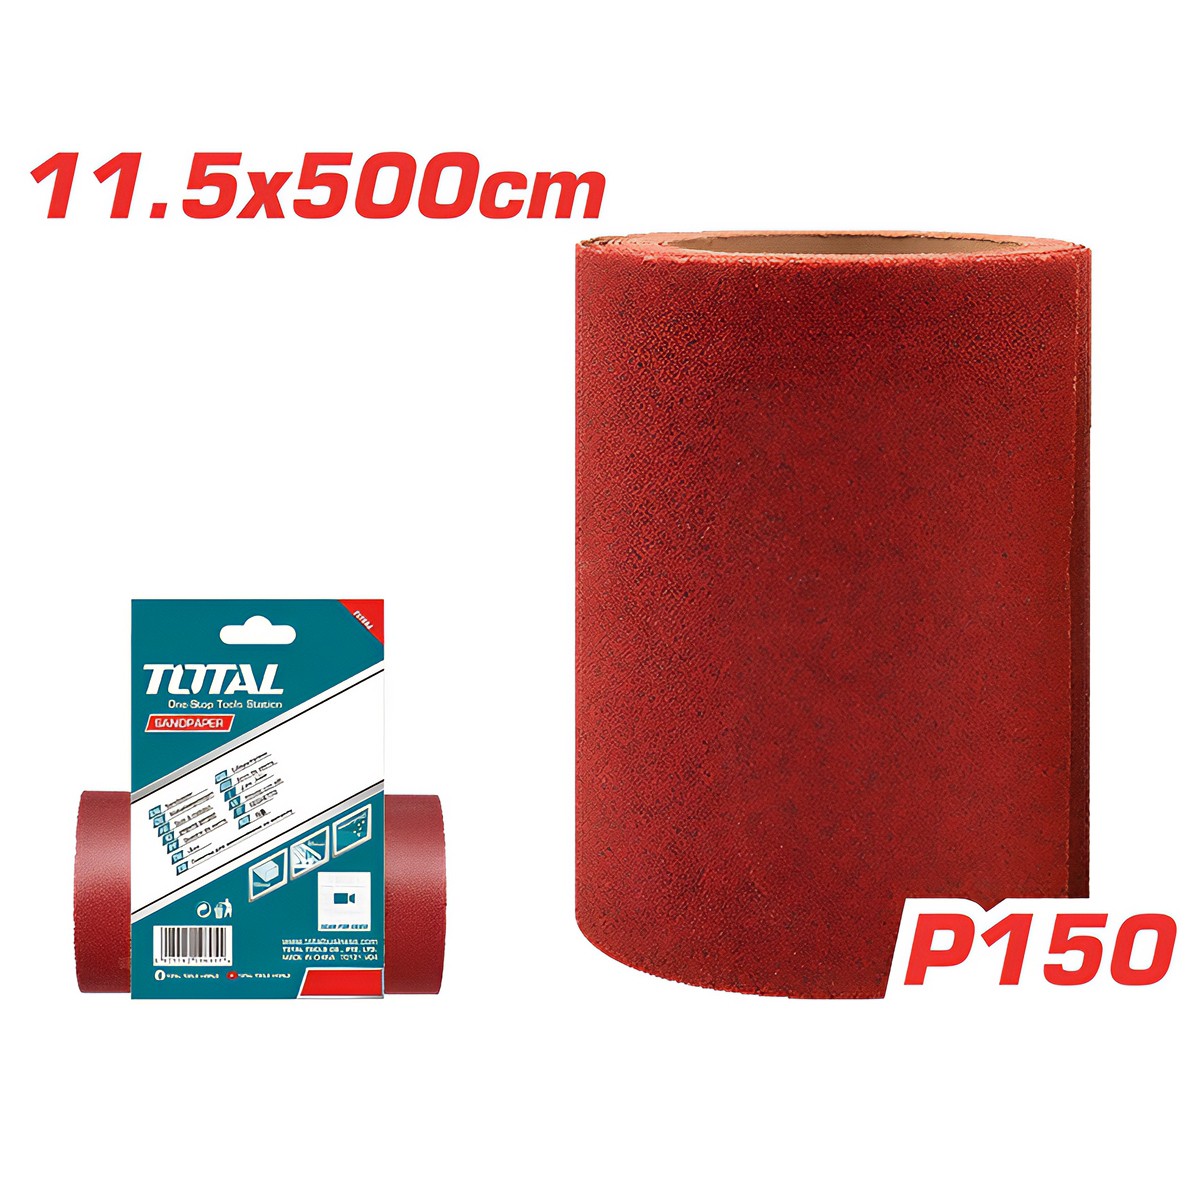 TOTAL RED SANDPAPER 11.5CM X 500CM P150